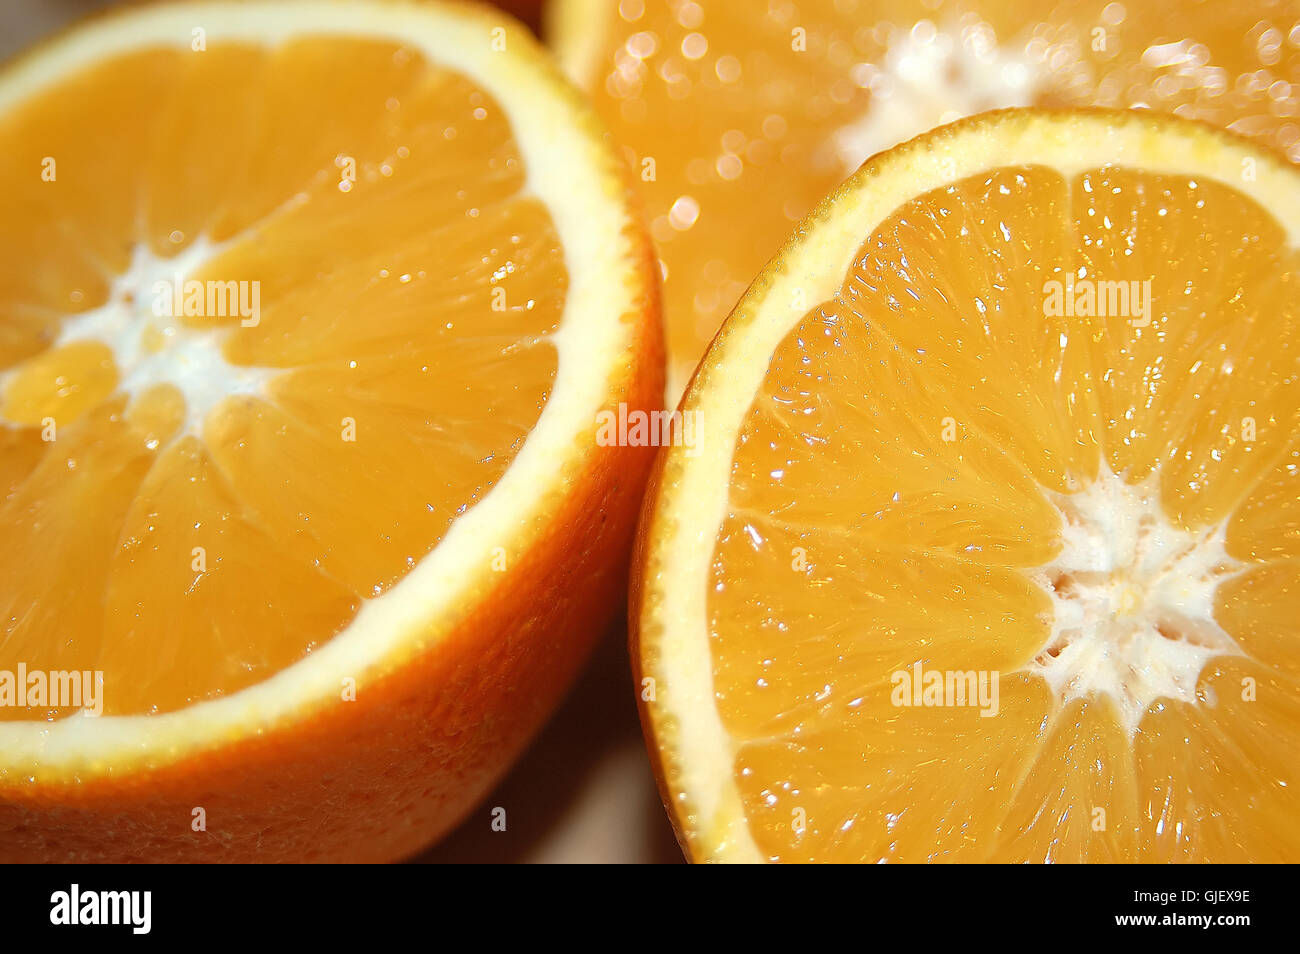 orange fruit orange juice Stock Photo